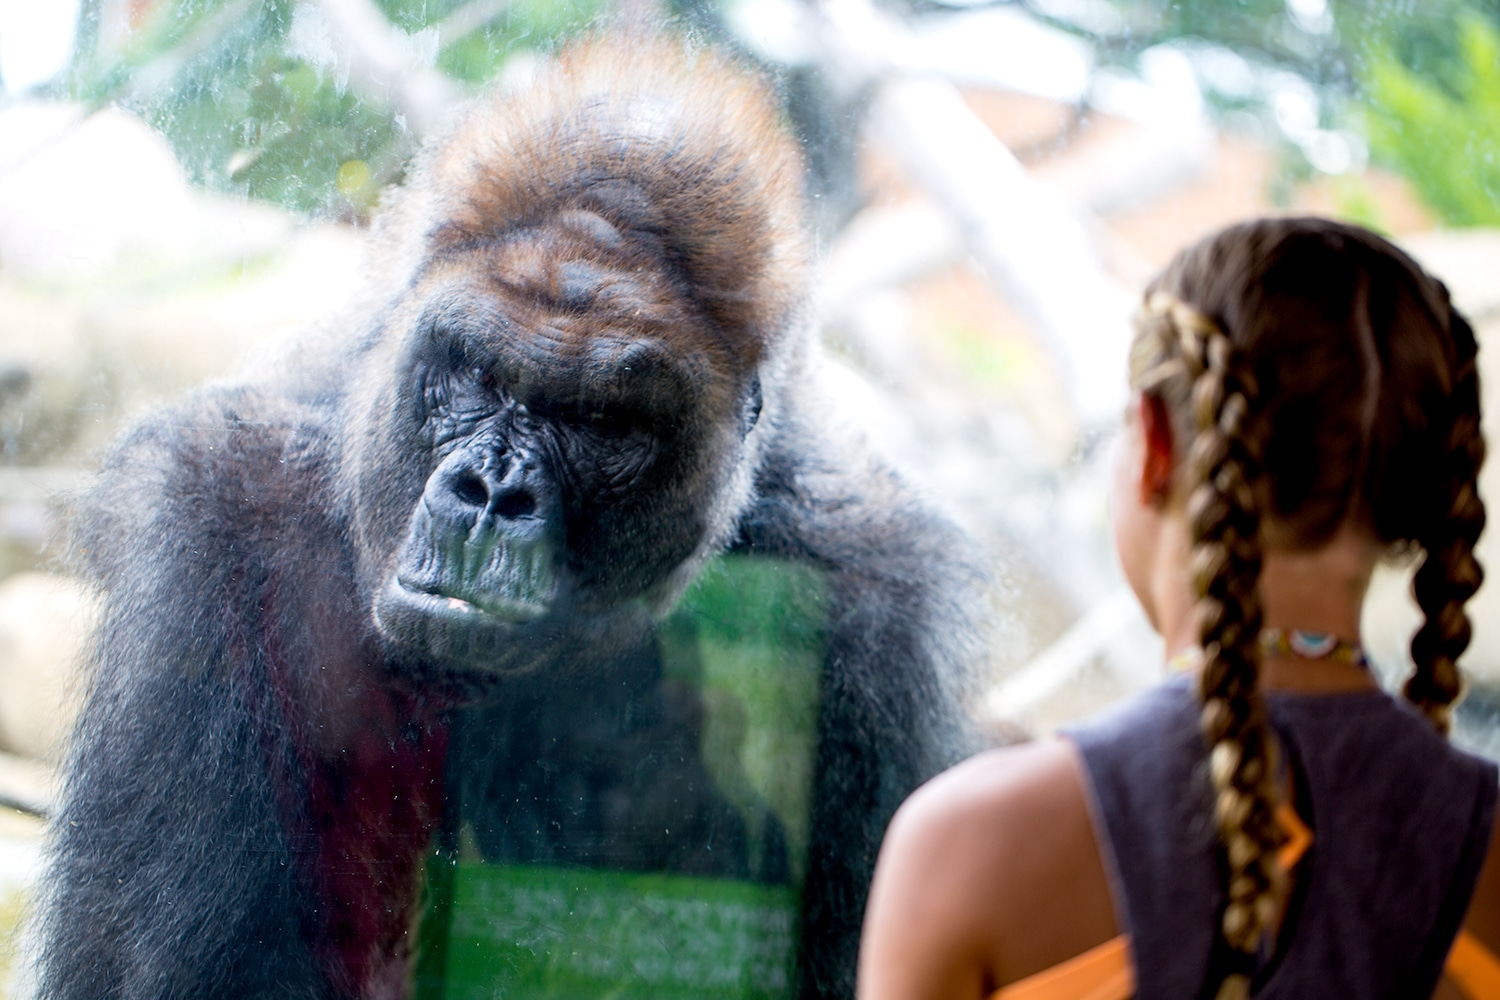 Gorilla looking at girl